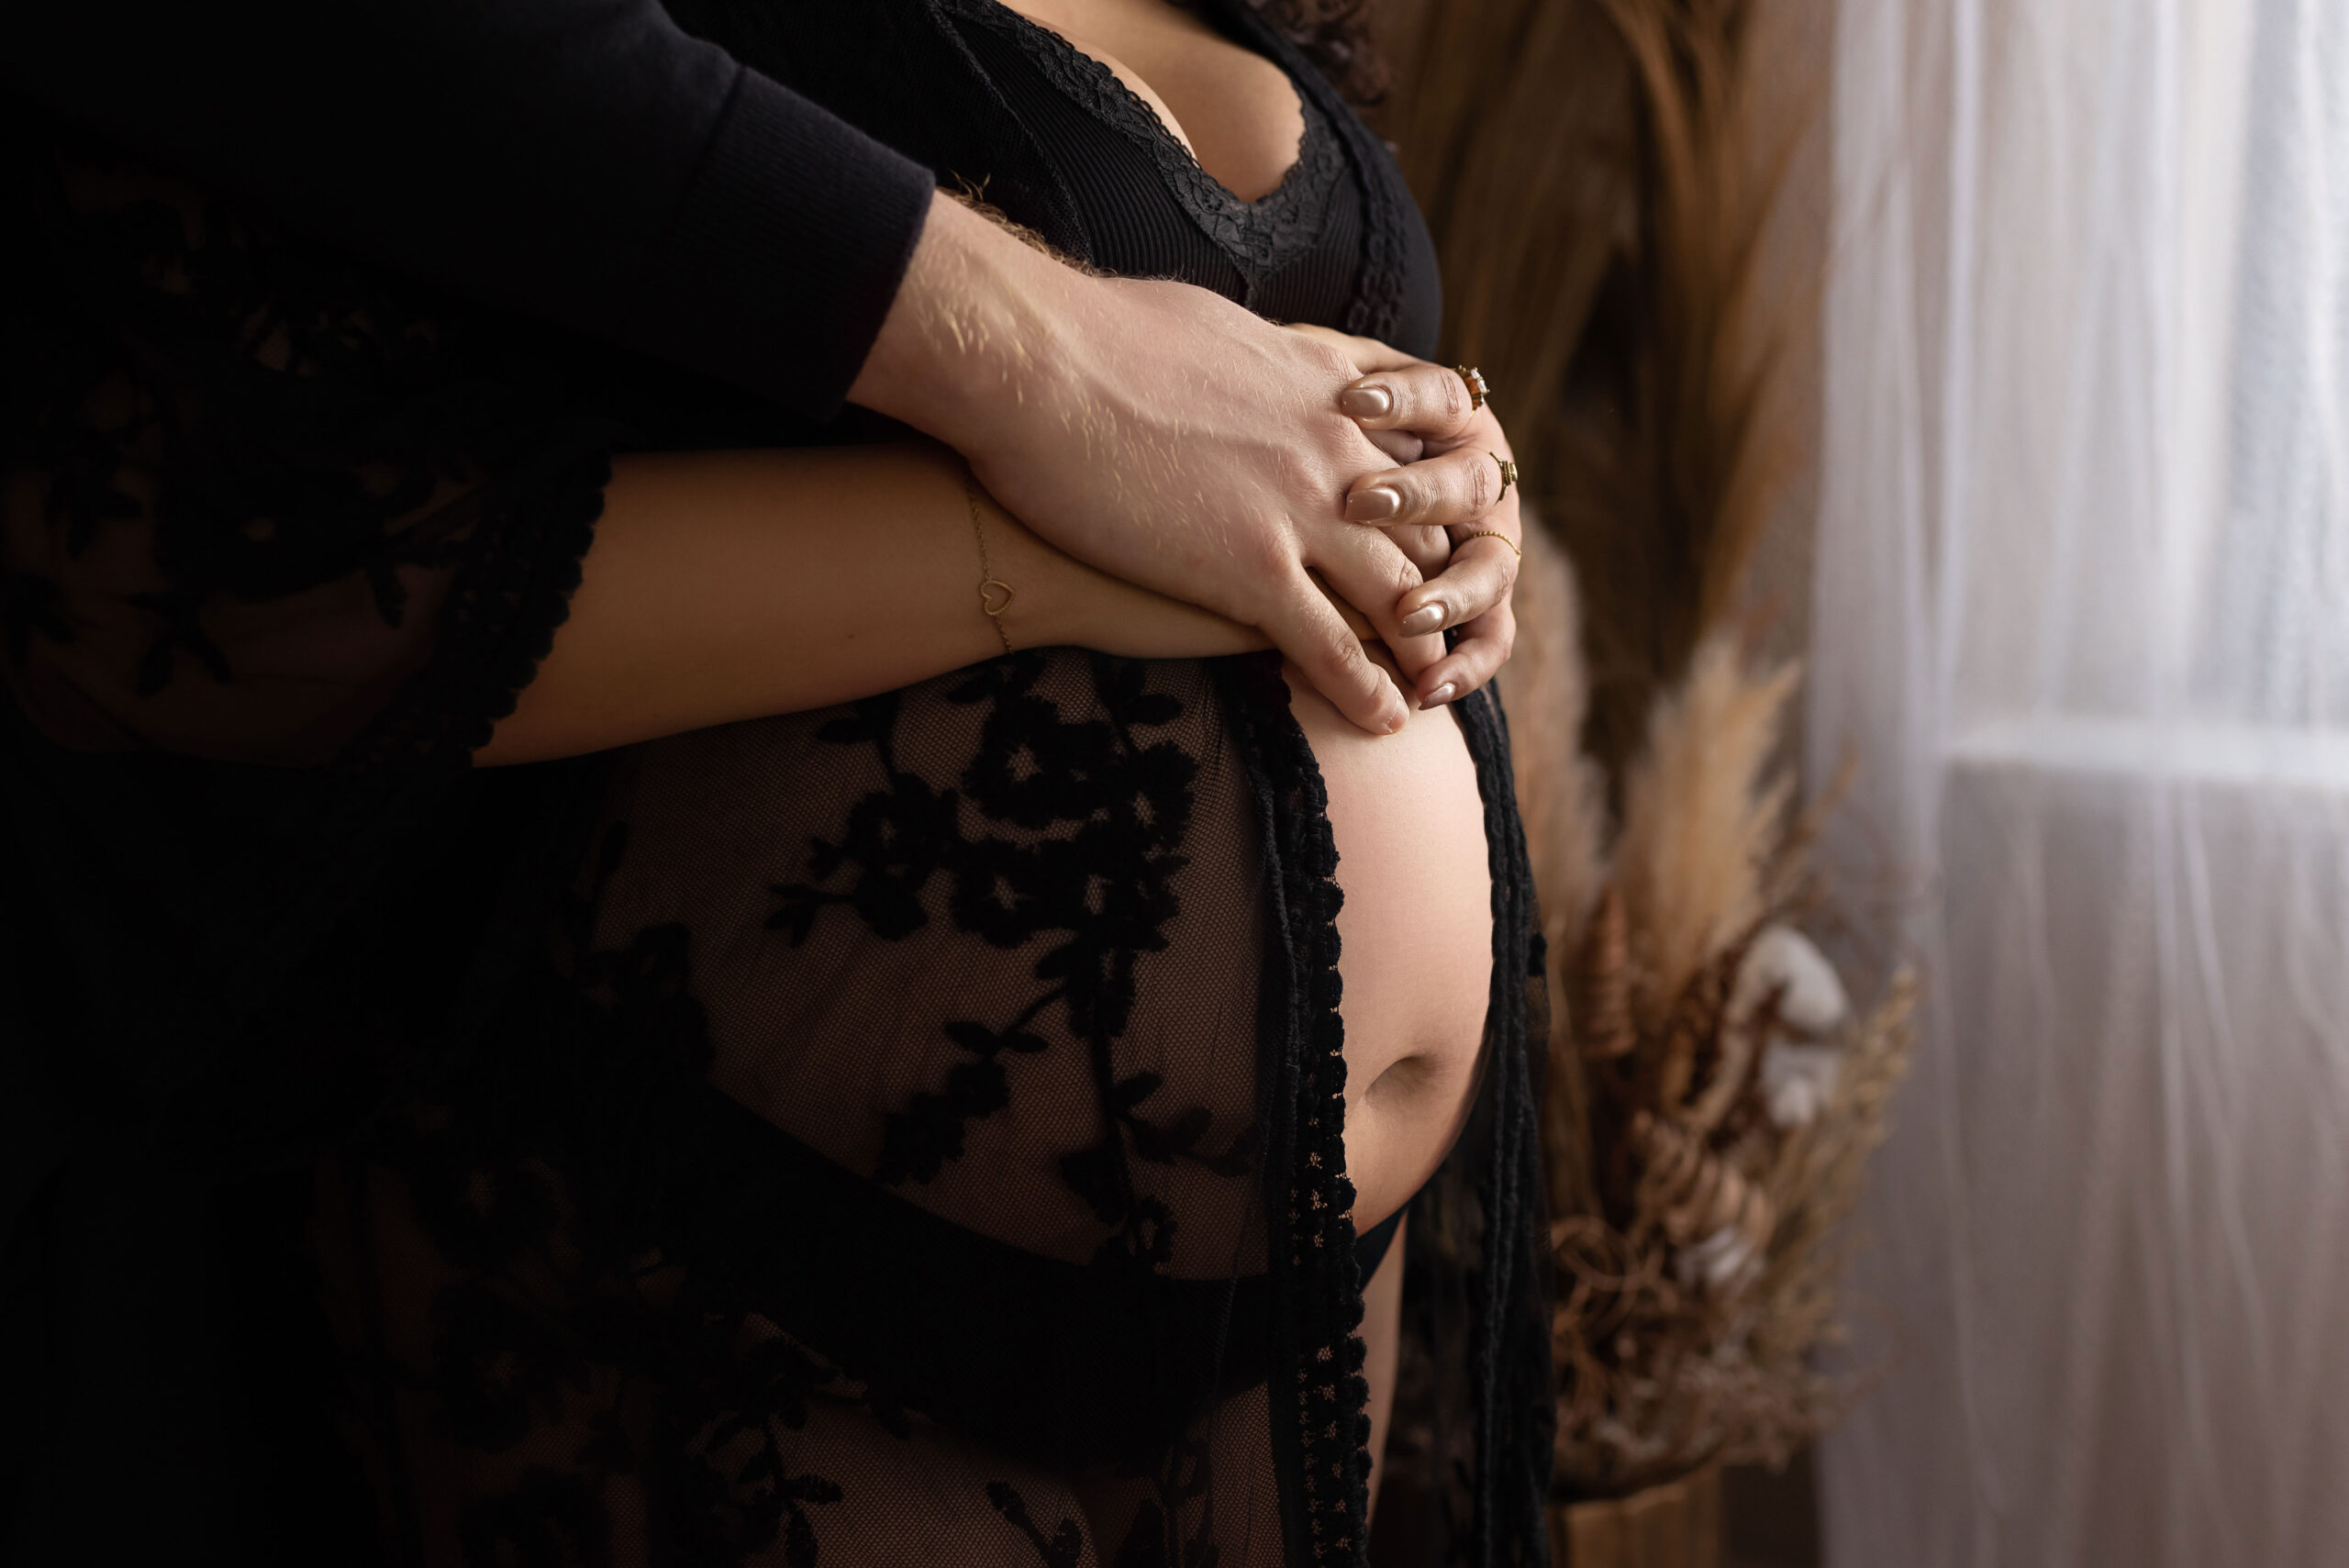 zwangerschapsshoot met partner om die schitterende momenten vast te leggen